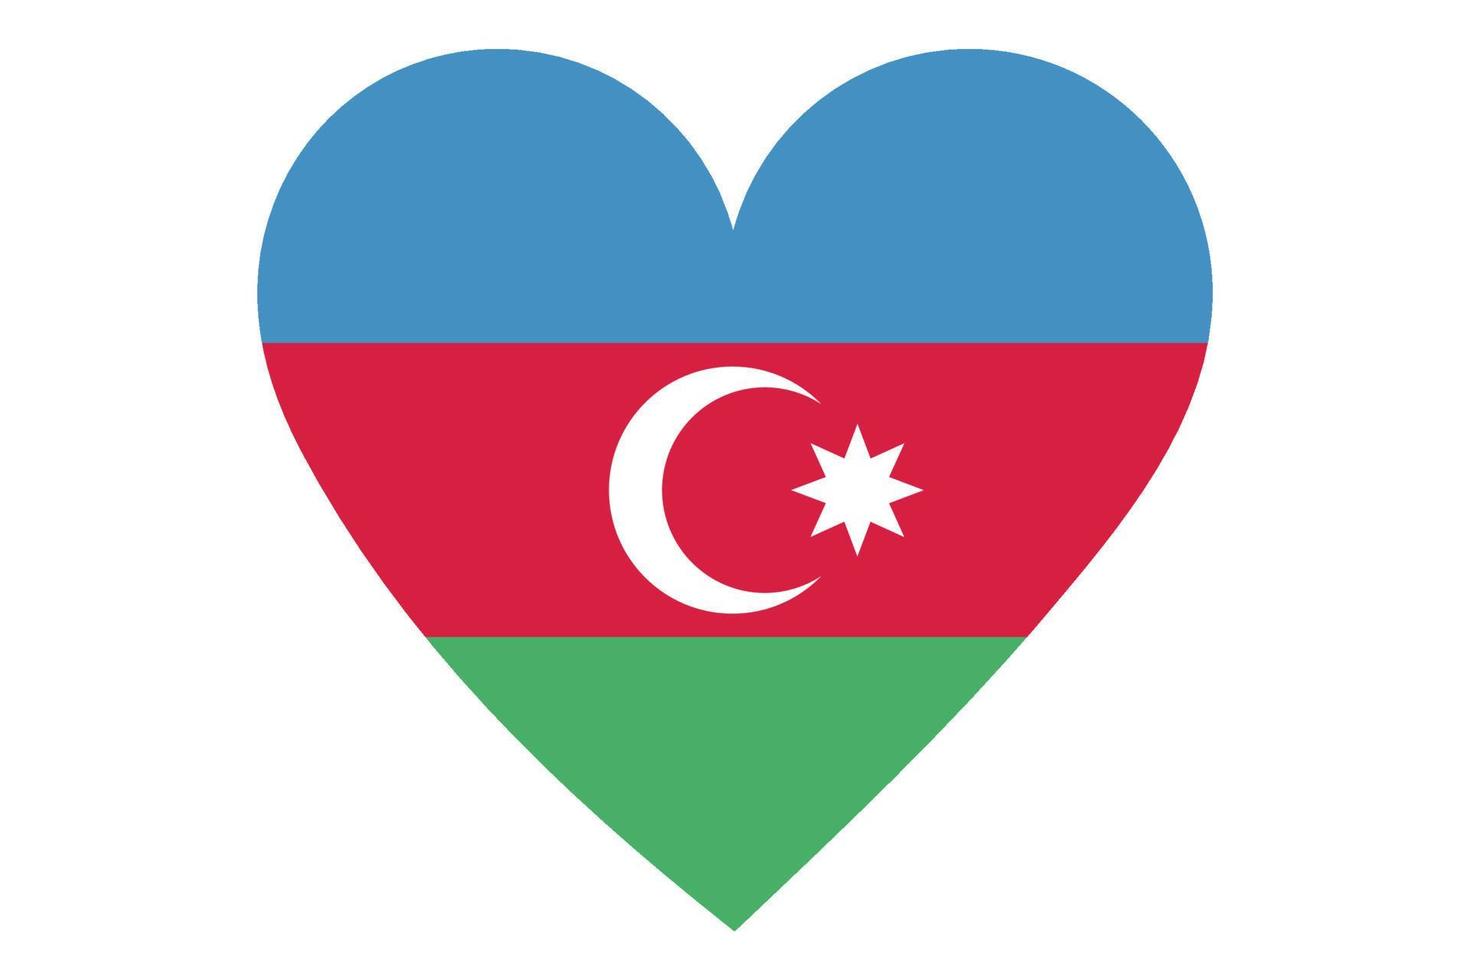 Heart flag vector of Azerbaijan on white background.